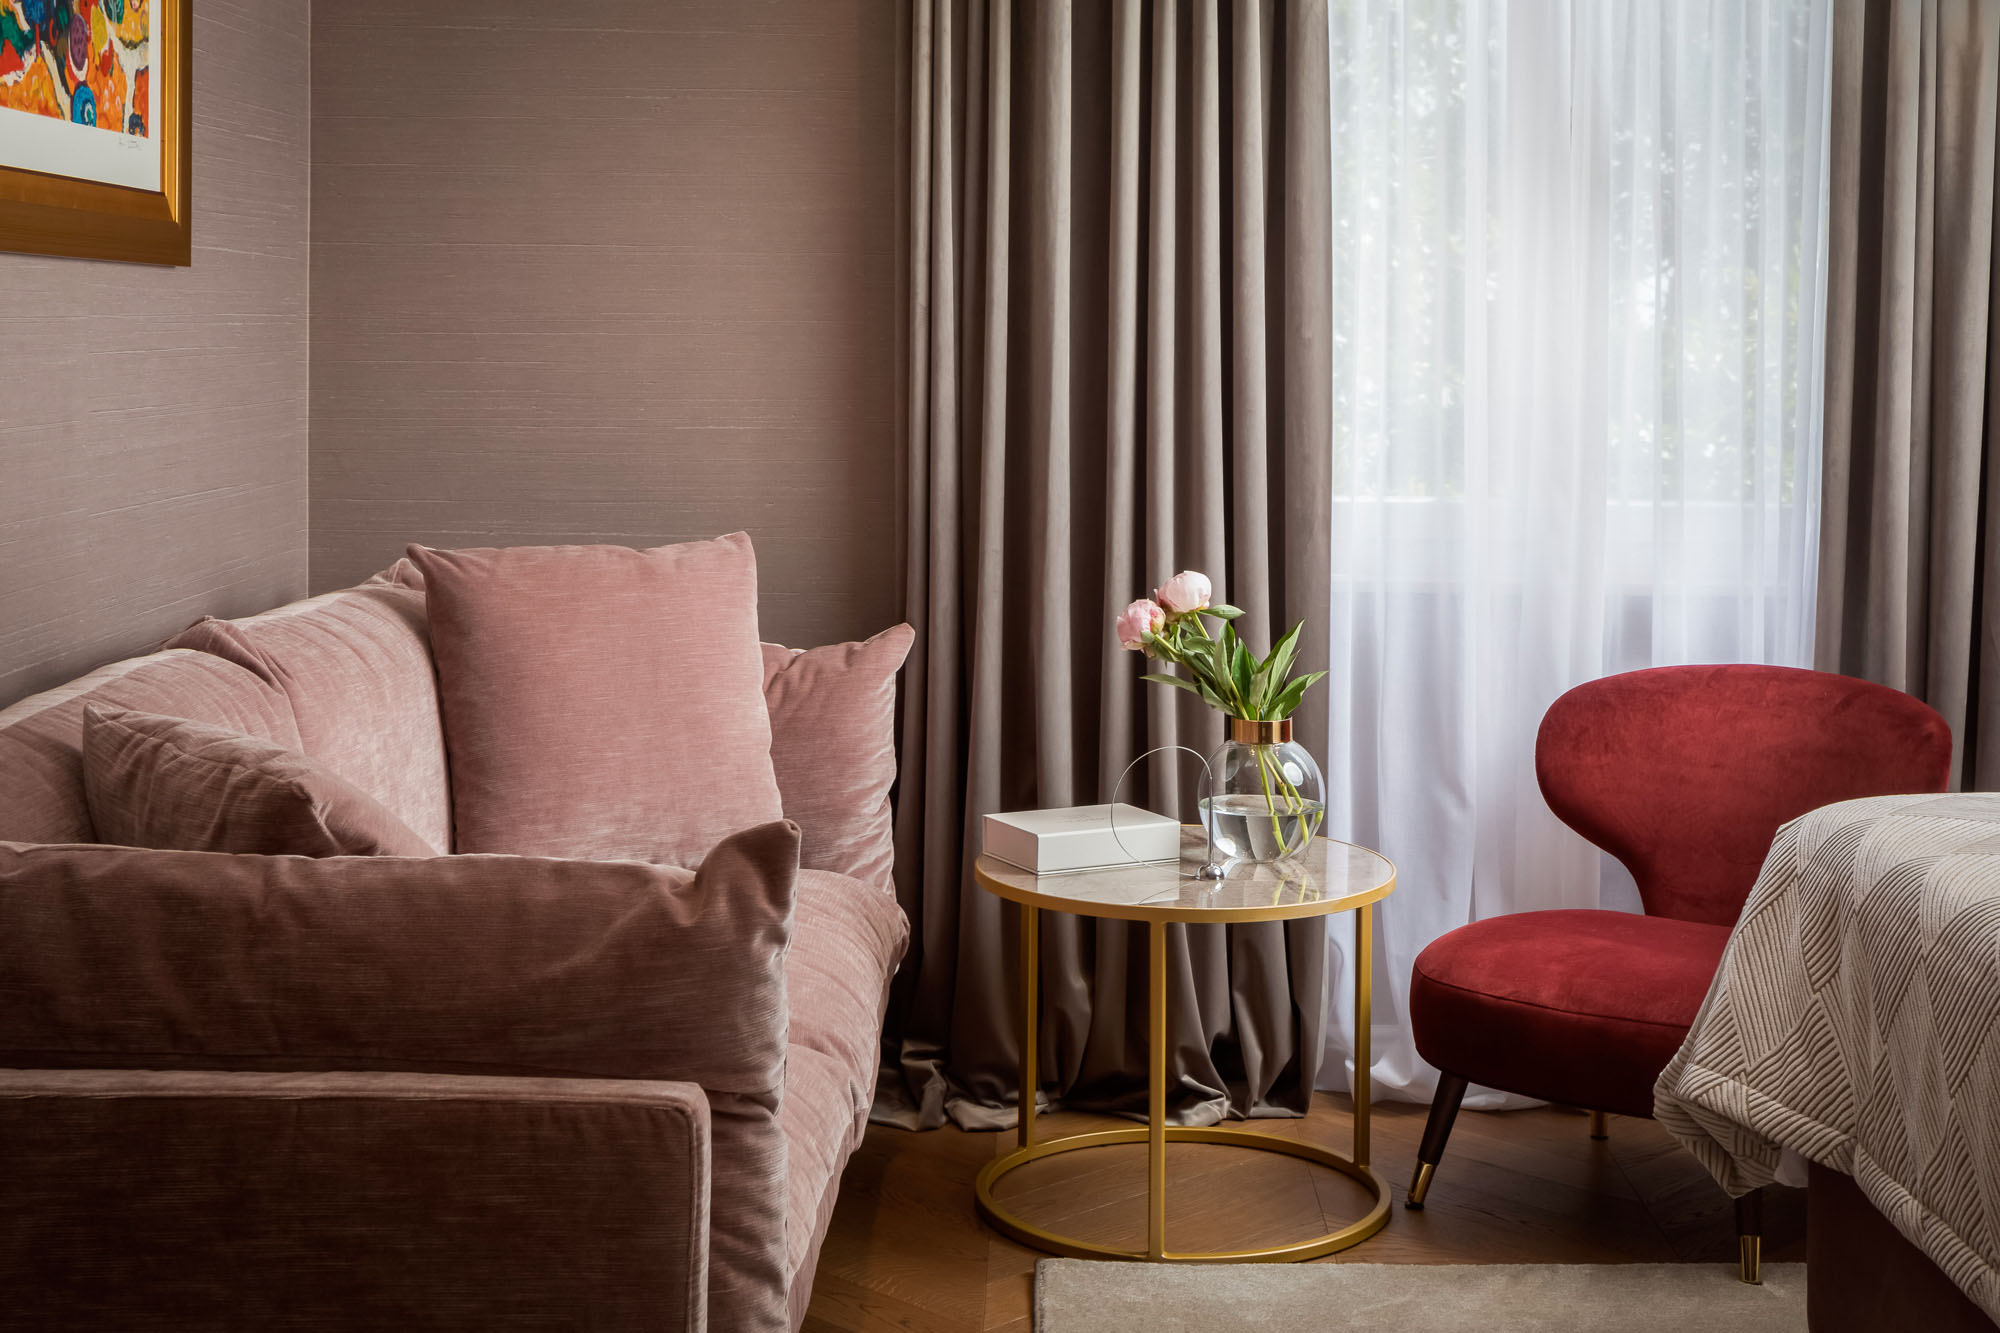 Five elements luxury rooms enSplit